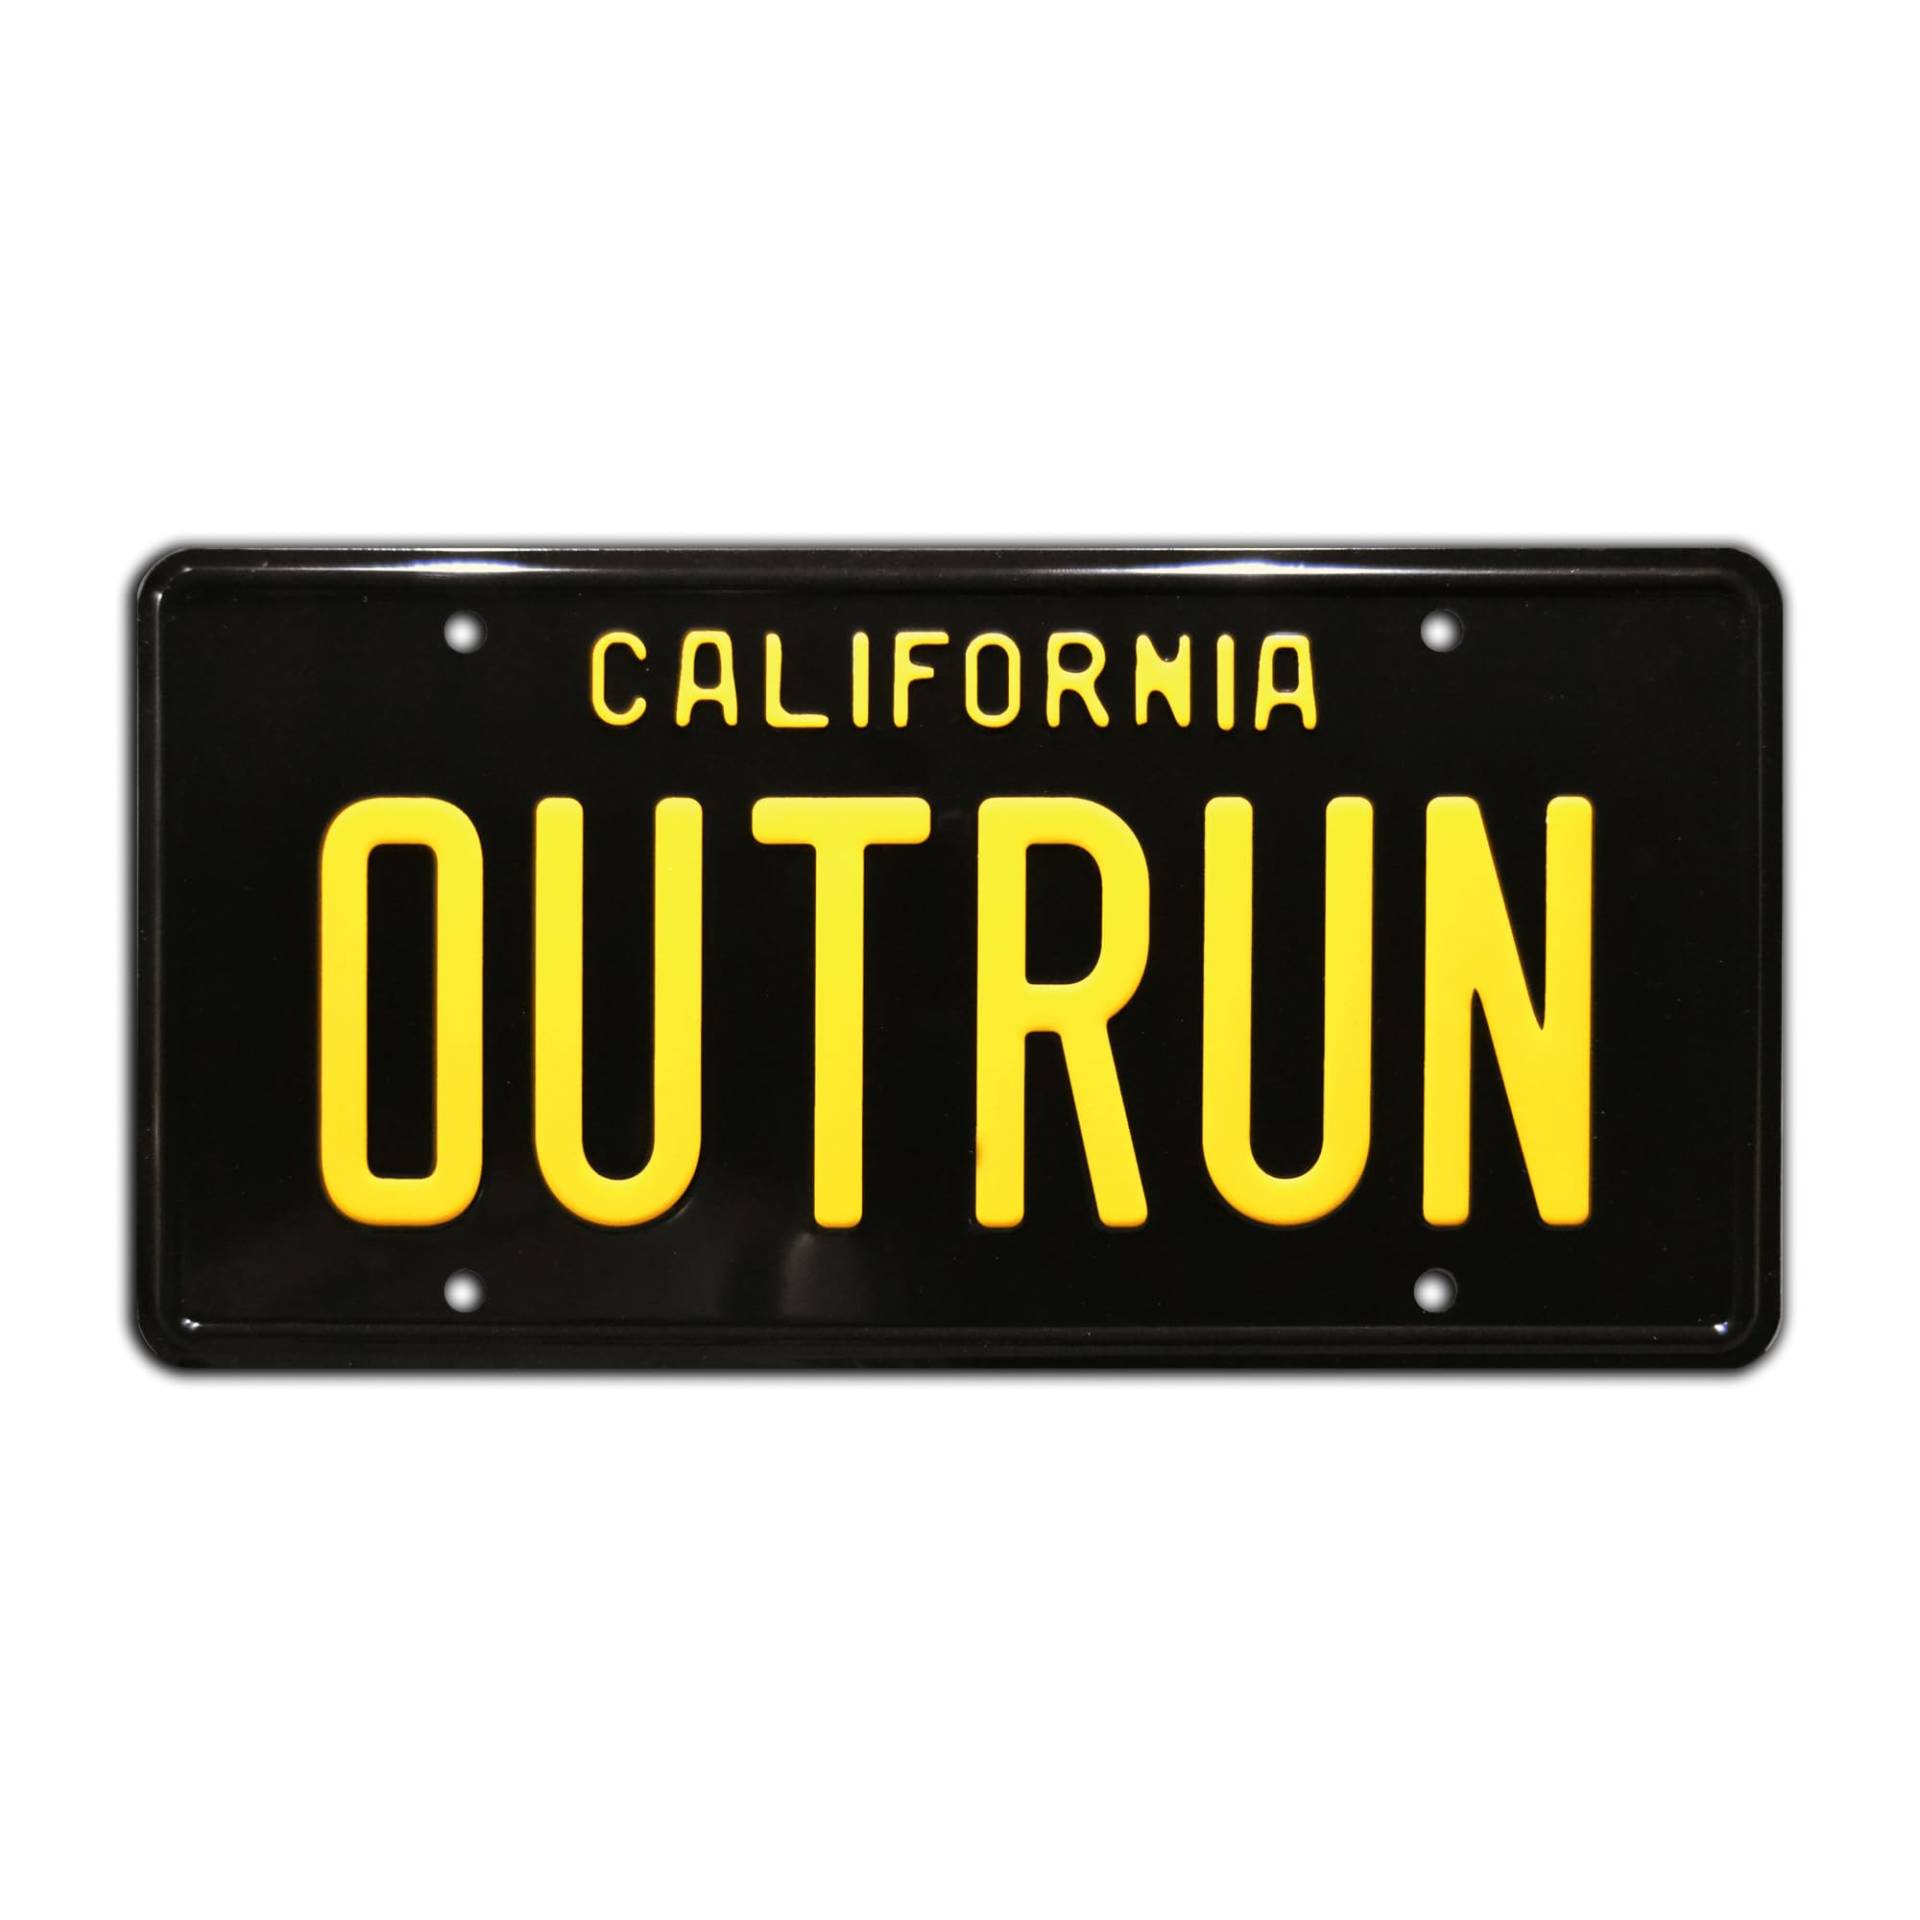 Out Run | Arcade Game | Metal Stamped License Plate von Celebrity Machines